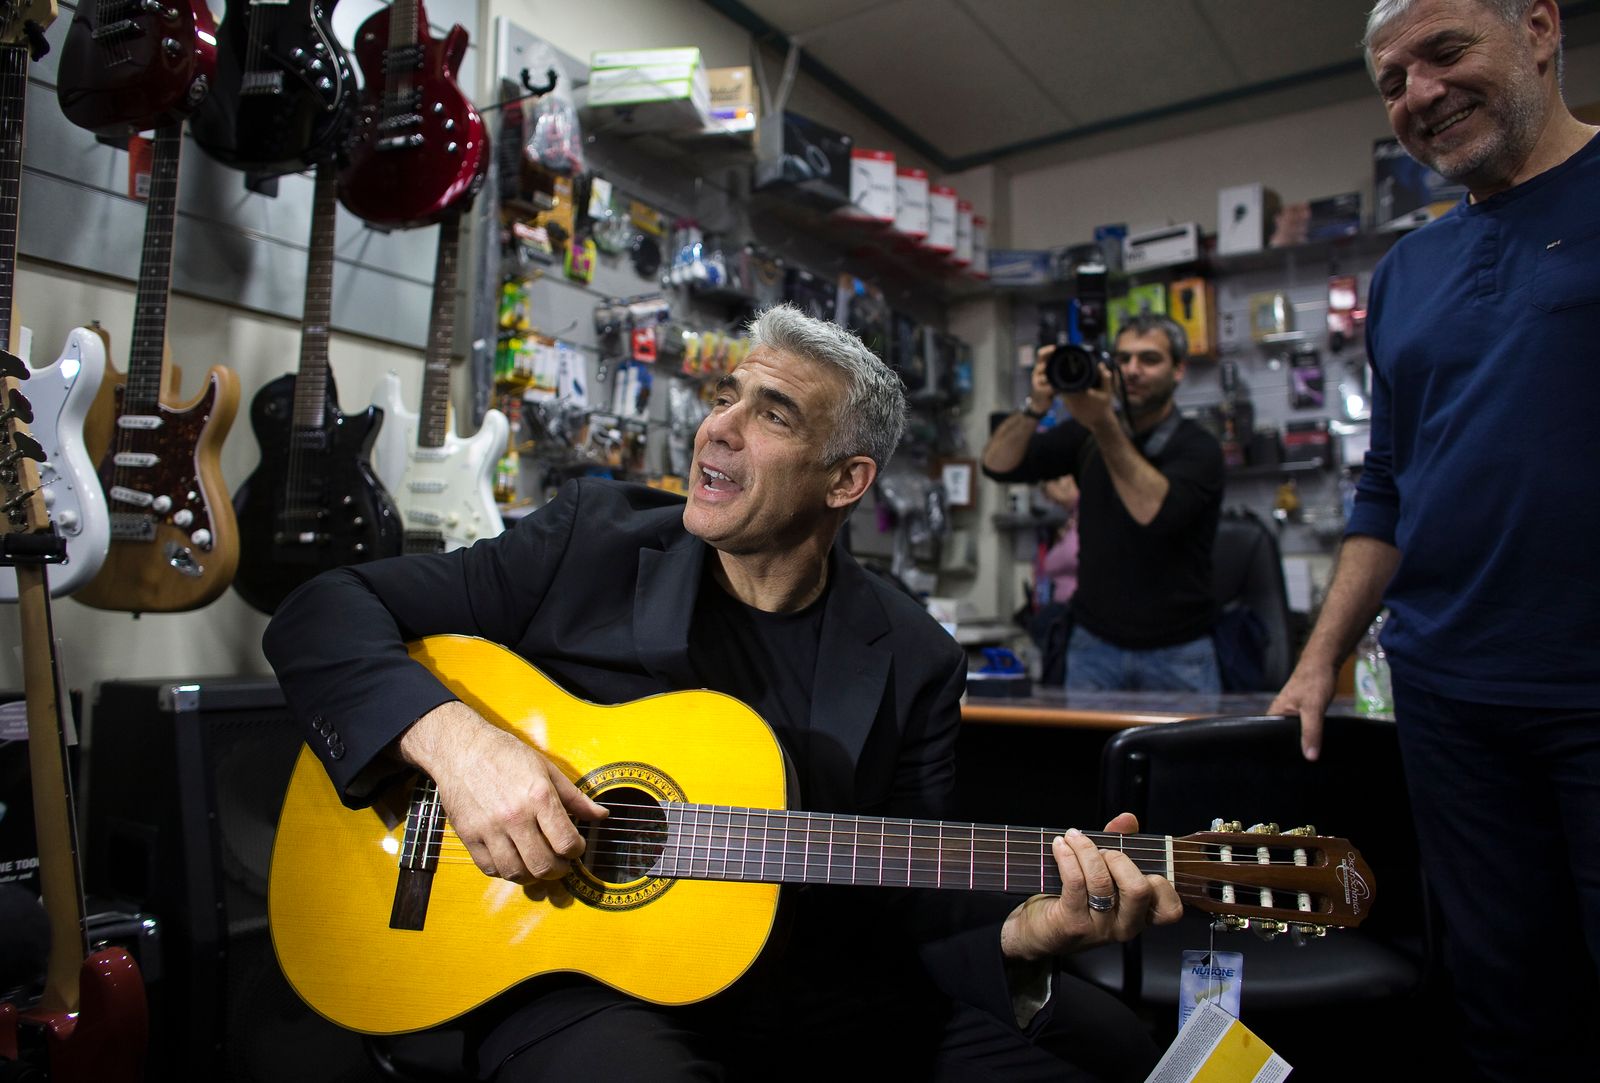 يائير لابيد يعزف على الغيتار في متجر للآلات الموسيقية أثناء حملته الانتخابية في أسدود - 15 مارس 2015 - REUTERS